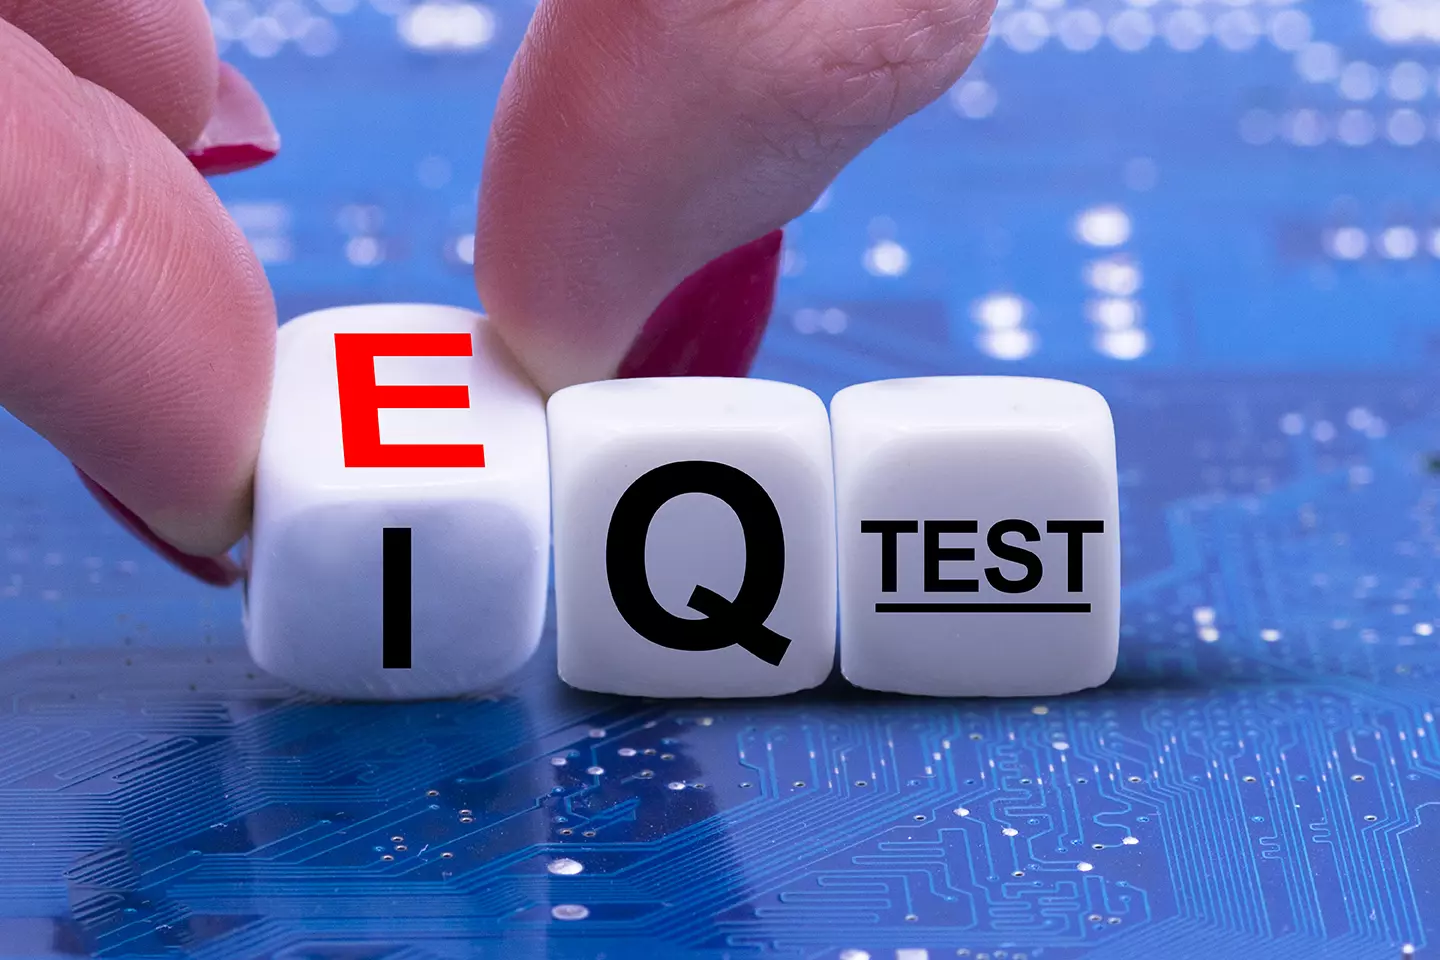 Persona tomando unos dados entre sus manos con las letras IQ test, representando Emociones inteligentes y la inteligencia emocional en el ámbito laboral.